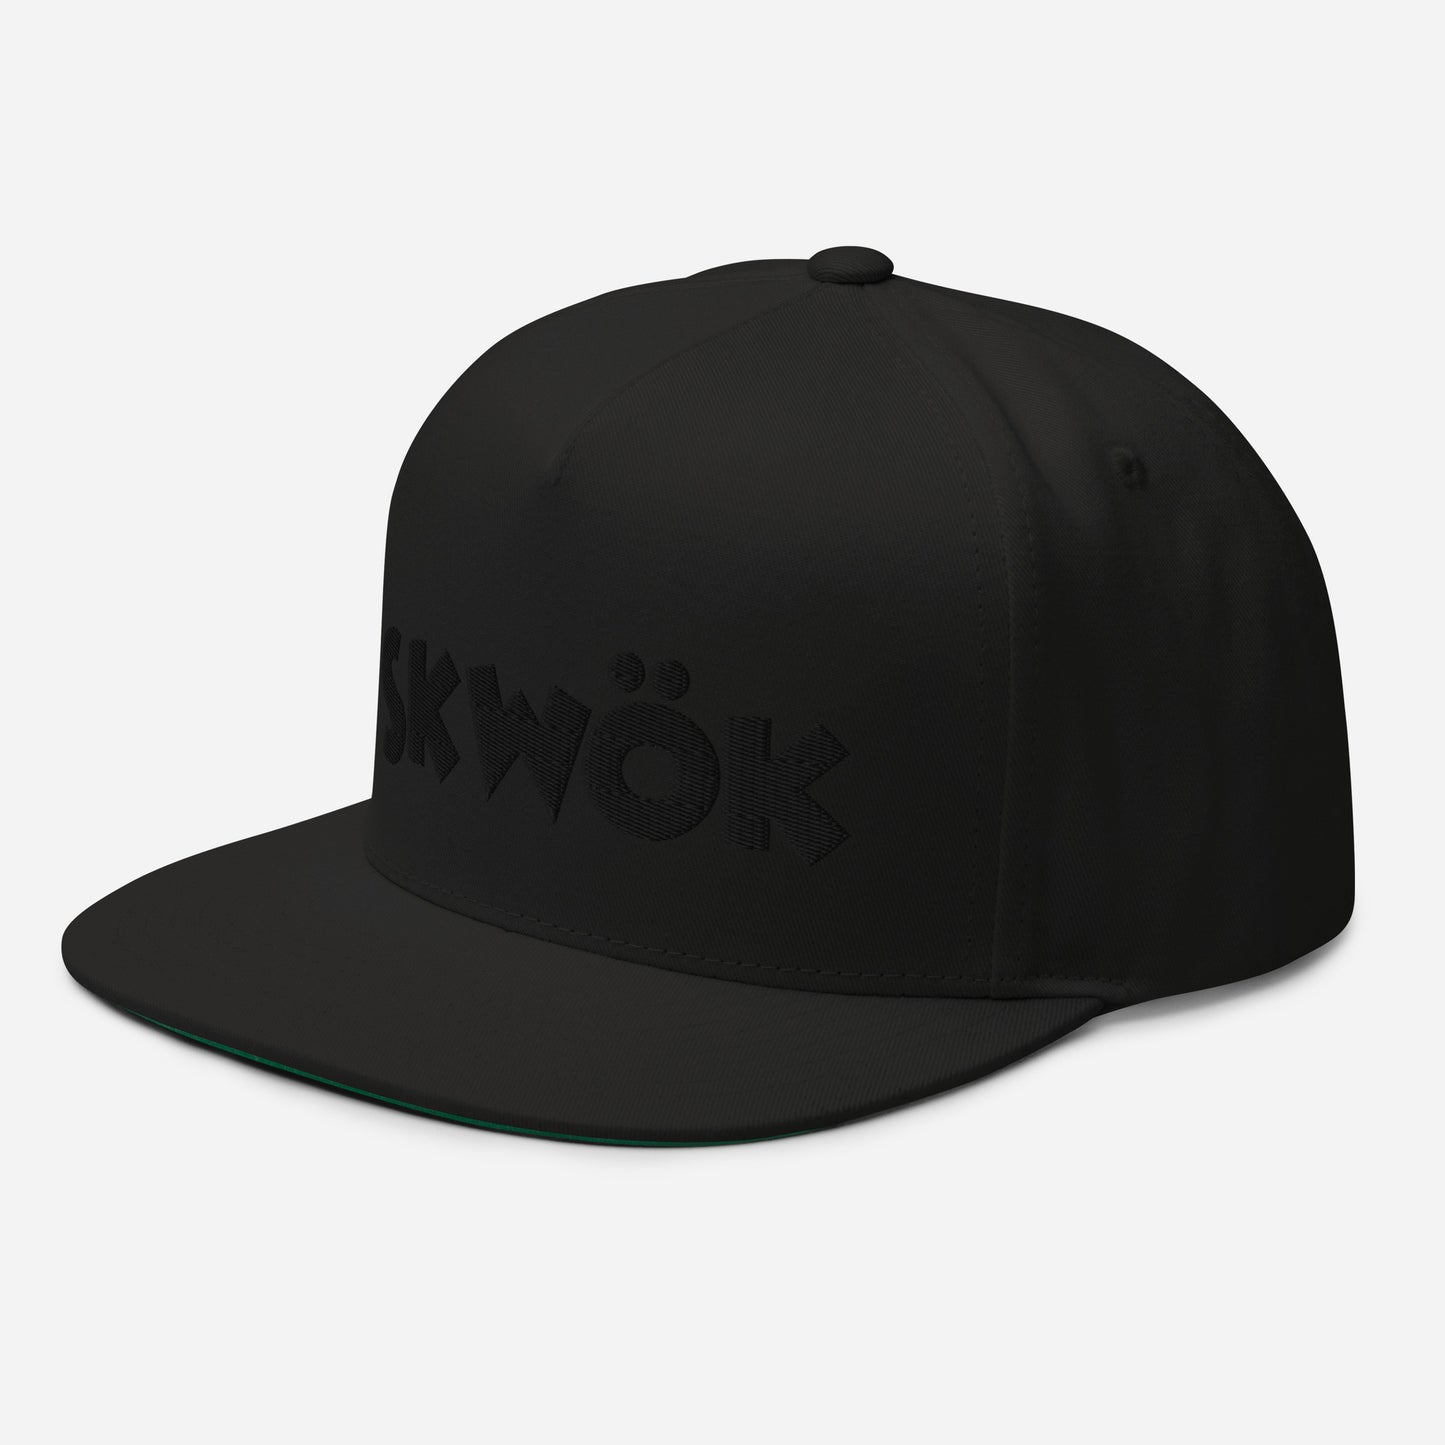 Skwok Brand / Hat / Flat Bill Cap / OG Logo / 3D Puff / Embroidered / Black / 7 Color Options